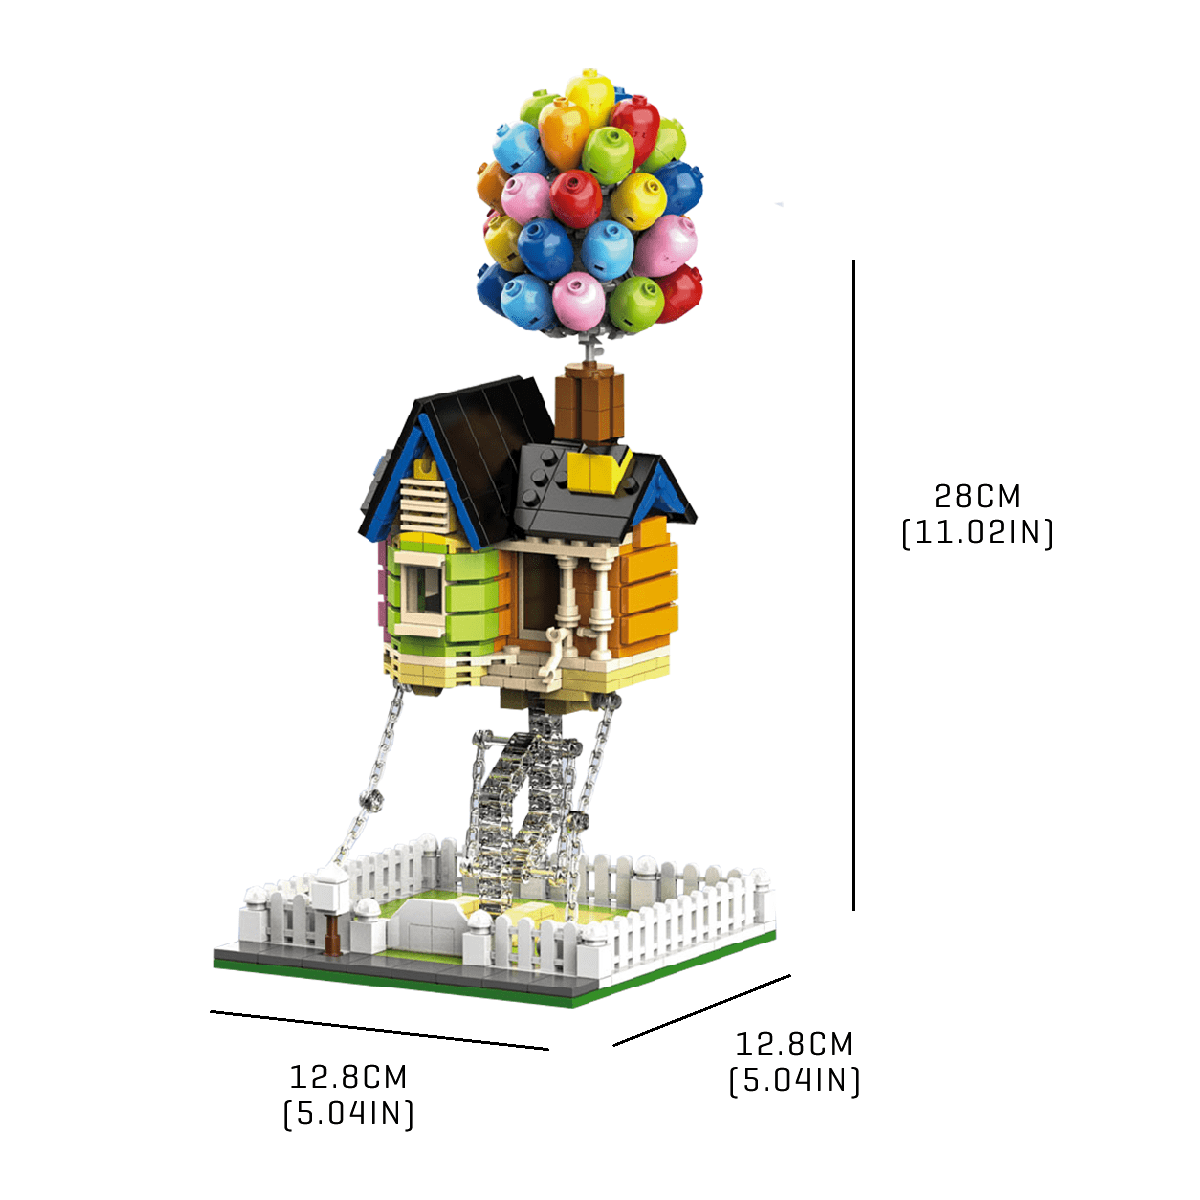 Fun Balloon House - Block Center 